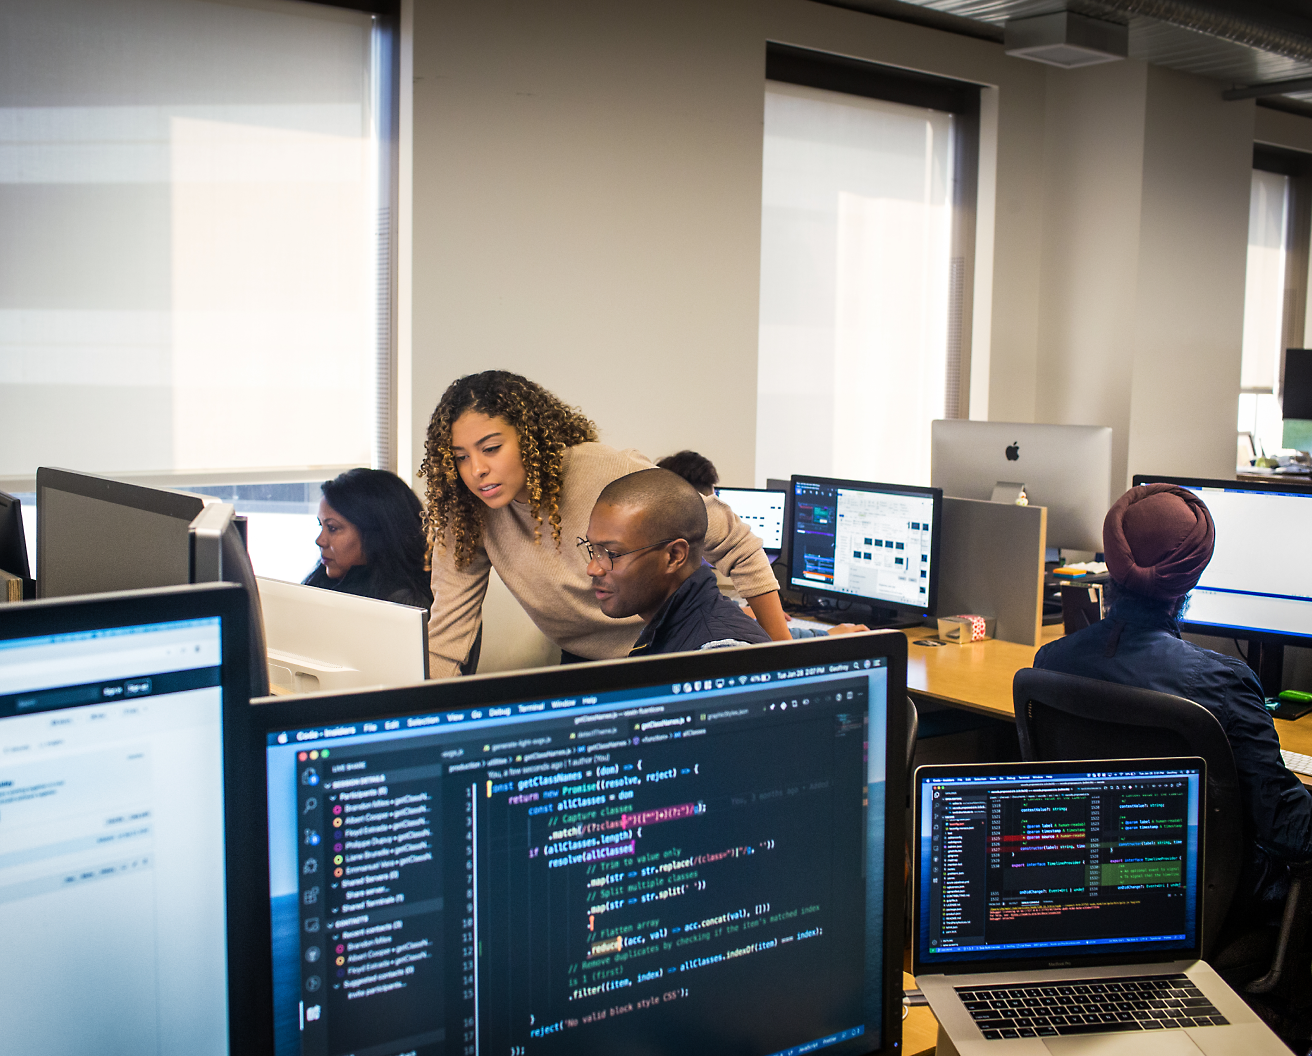 En mangfoldig gruppe fagpersoner arbejder på computere i et kontormiljø, hvor de fokuserer på skærme med forskellig synlig kode og data.